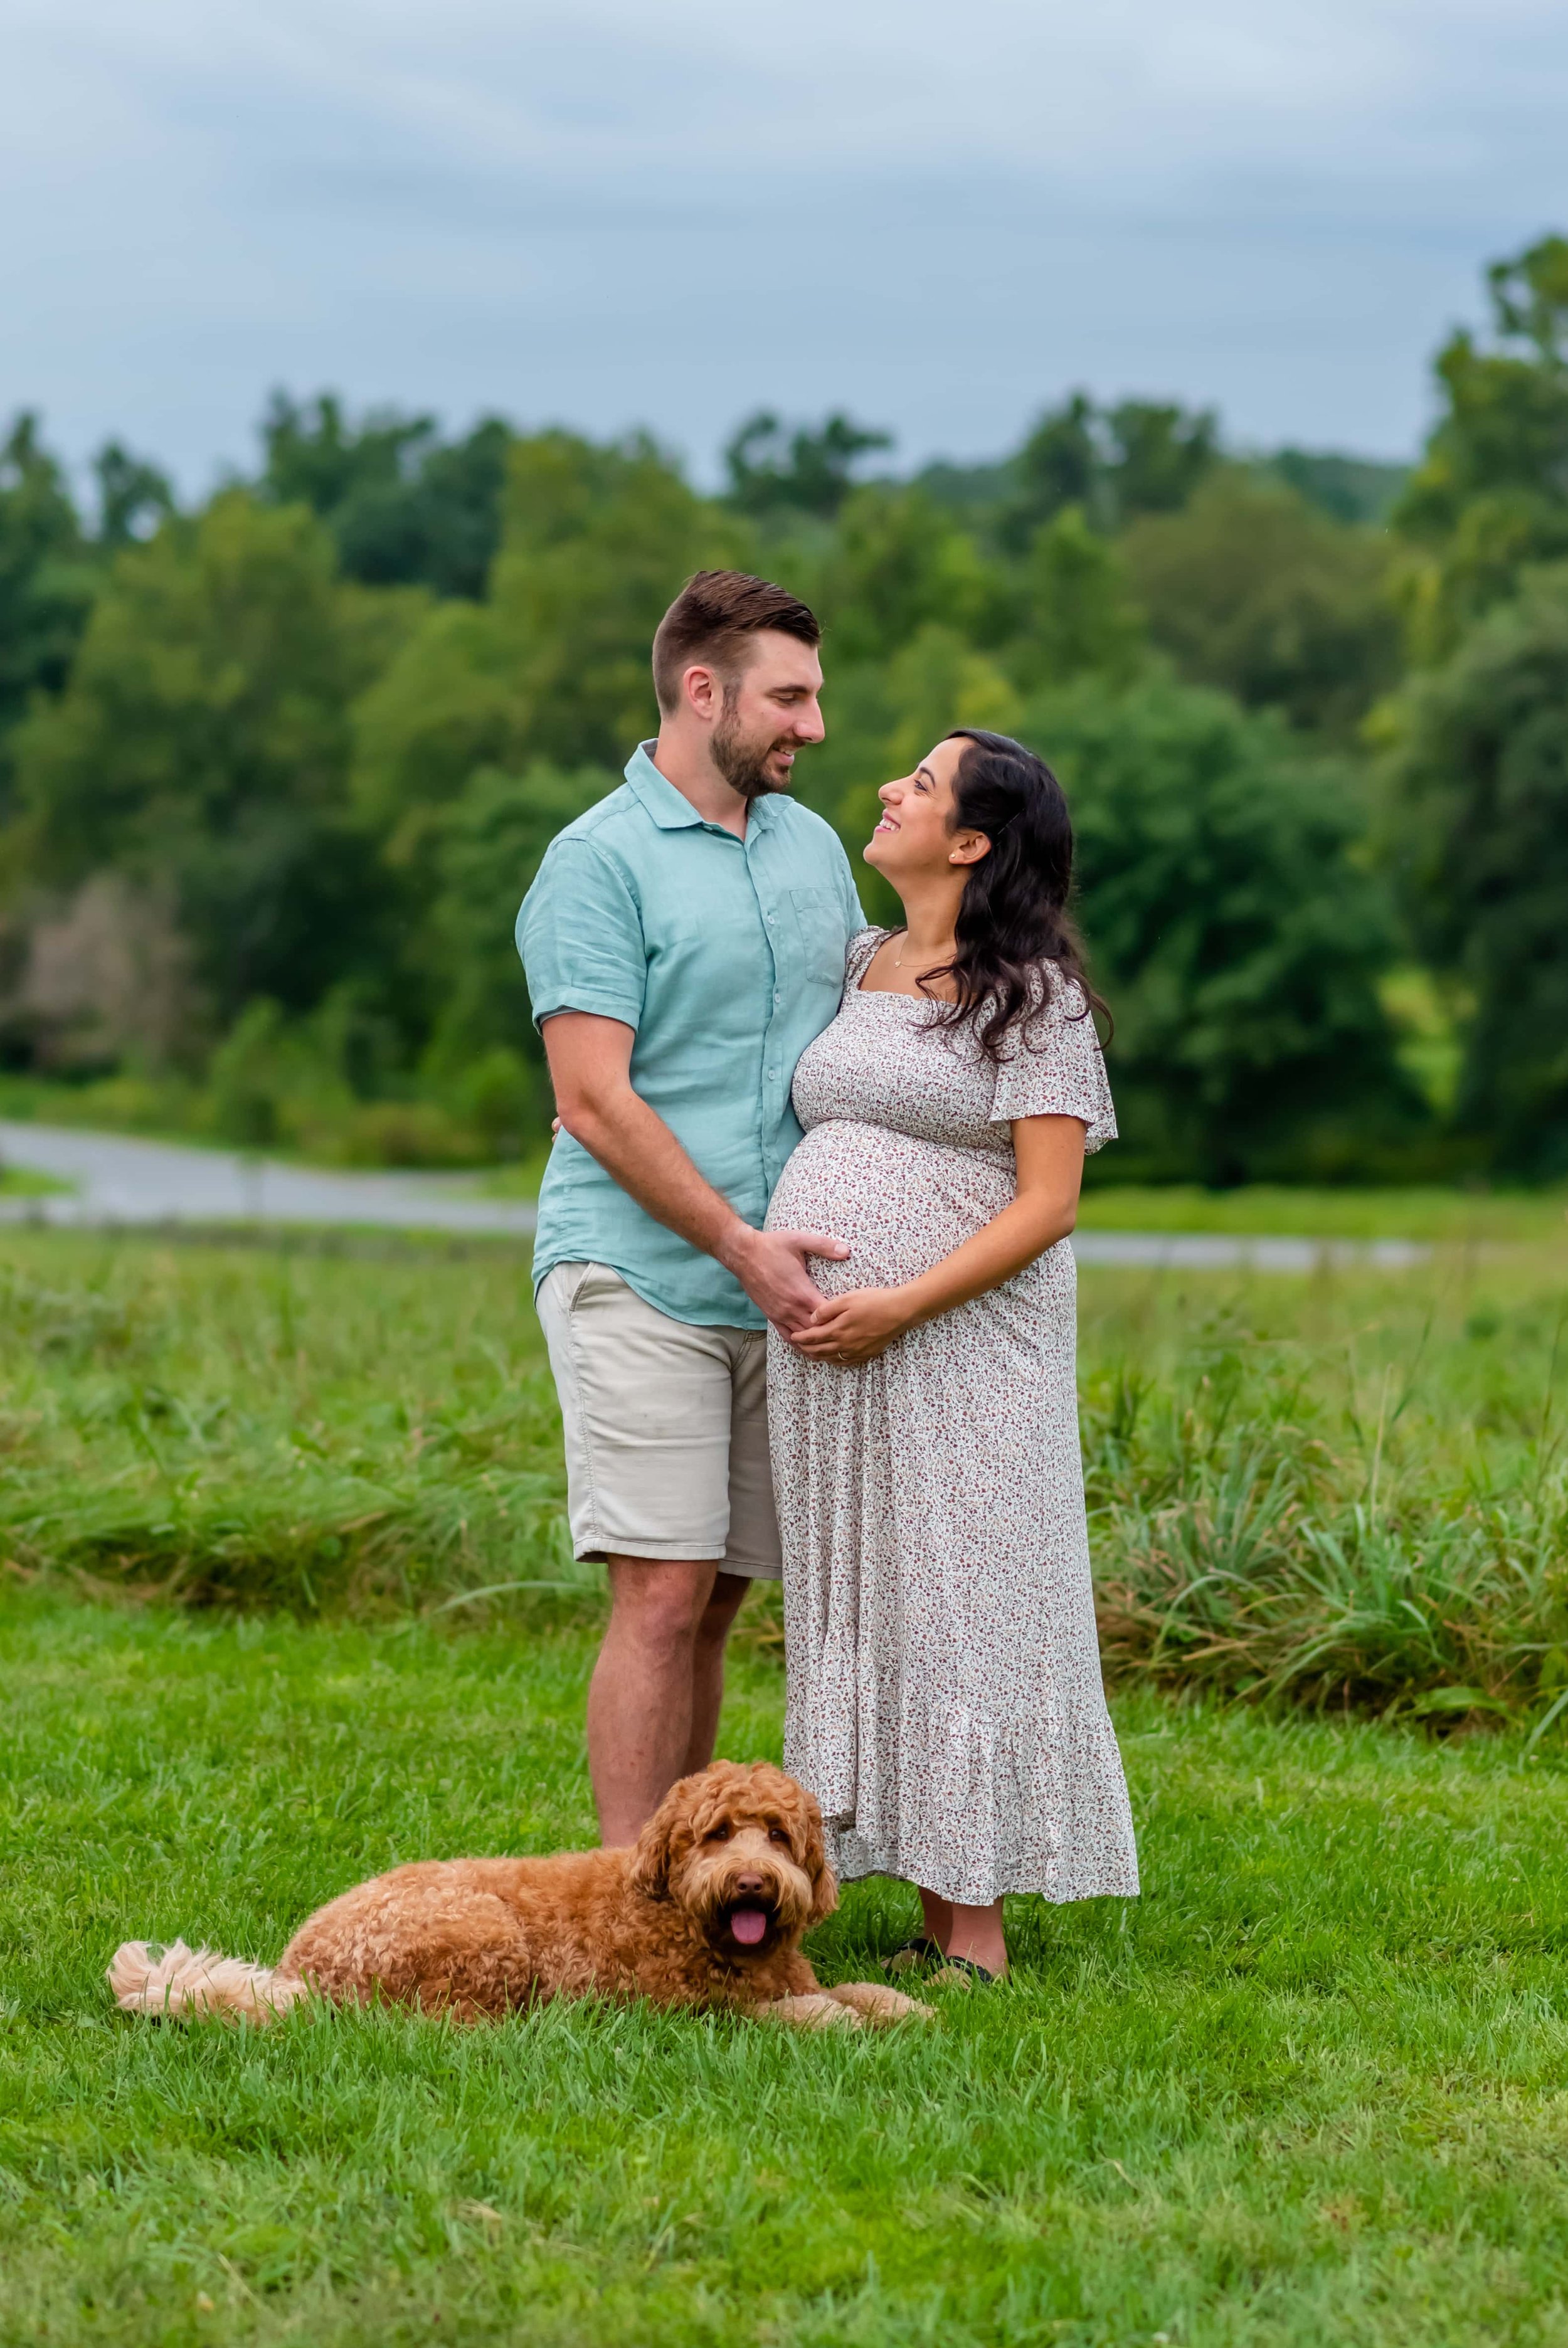 Maryland Maternity couple photoshoot with pet